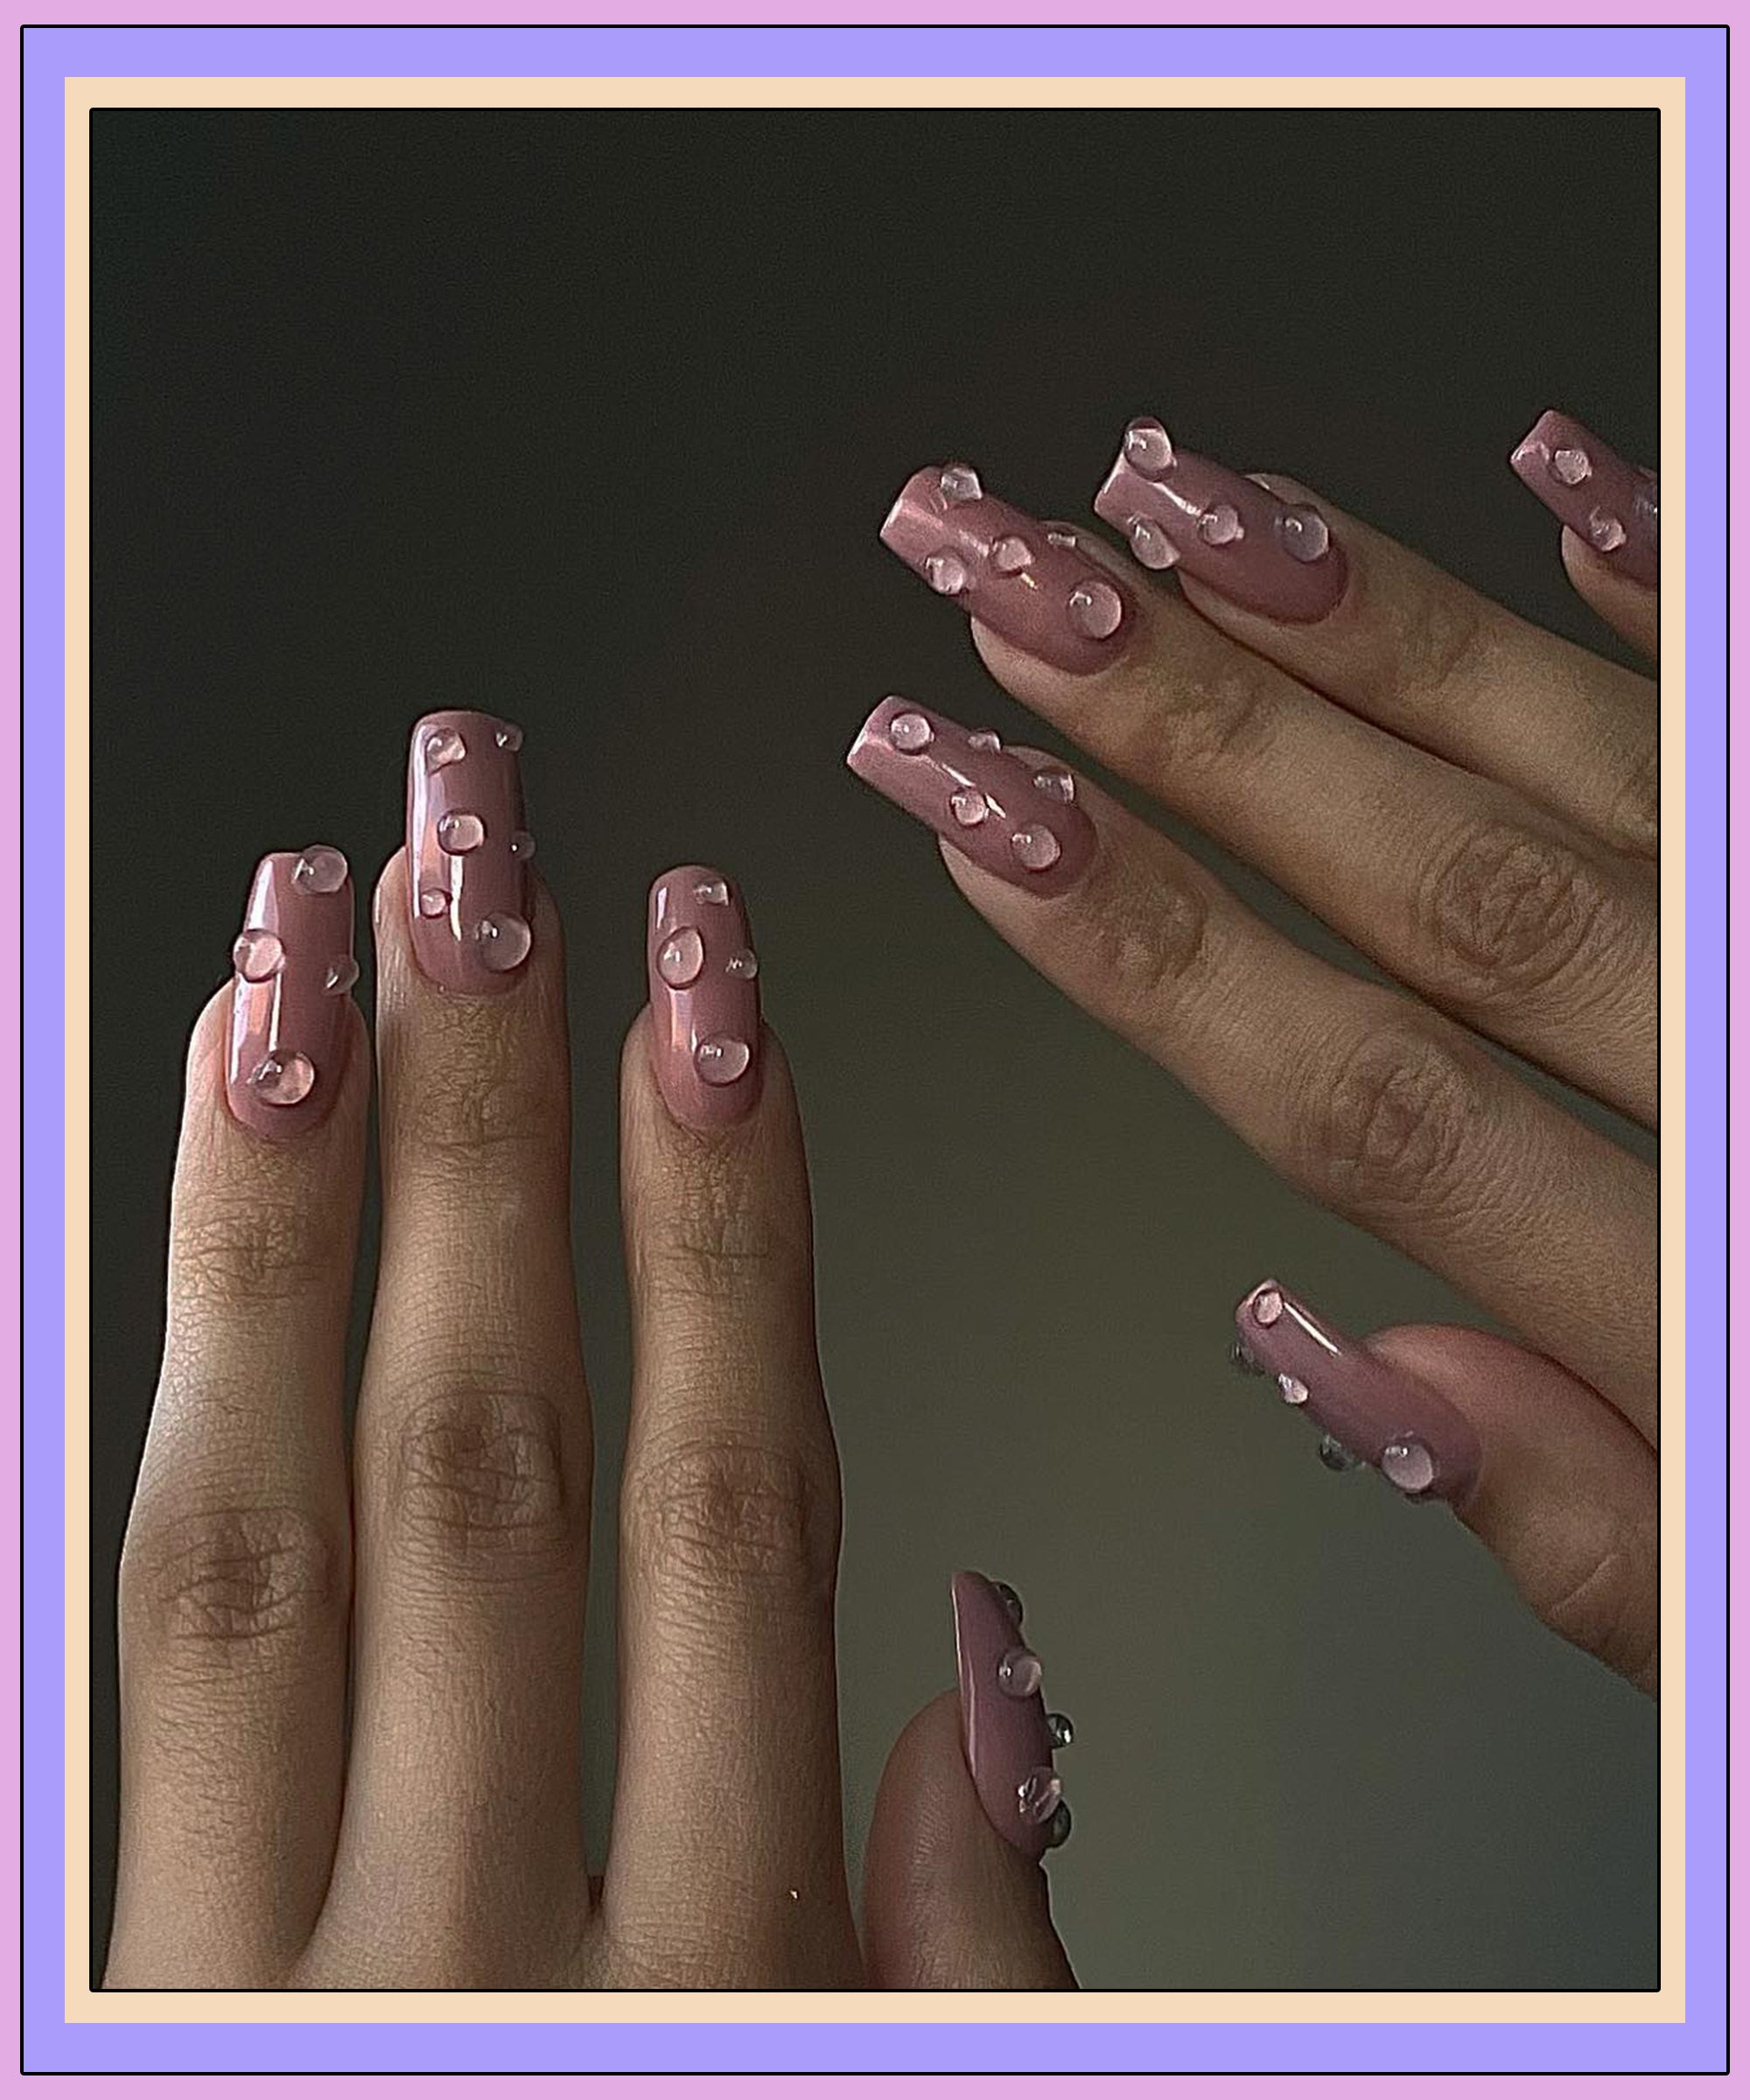 Xu hướng nail art giọt nước 3D - Những giọt nước 3D được tạo ra bằng các hạt dẻo ở trên móng tay sẽ tạo ra một sự khác biệt mới trong nail art. Nó là xu hướng mới nhất và được người tiêu dùng yêu thích tại khắp thế giới. Hãy tham gia trào lưu này với những người thợ chuyên nghiệp nhất tại salon của chúng tôi.